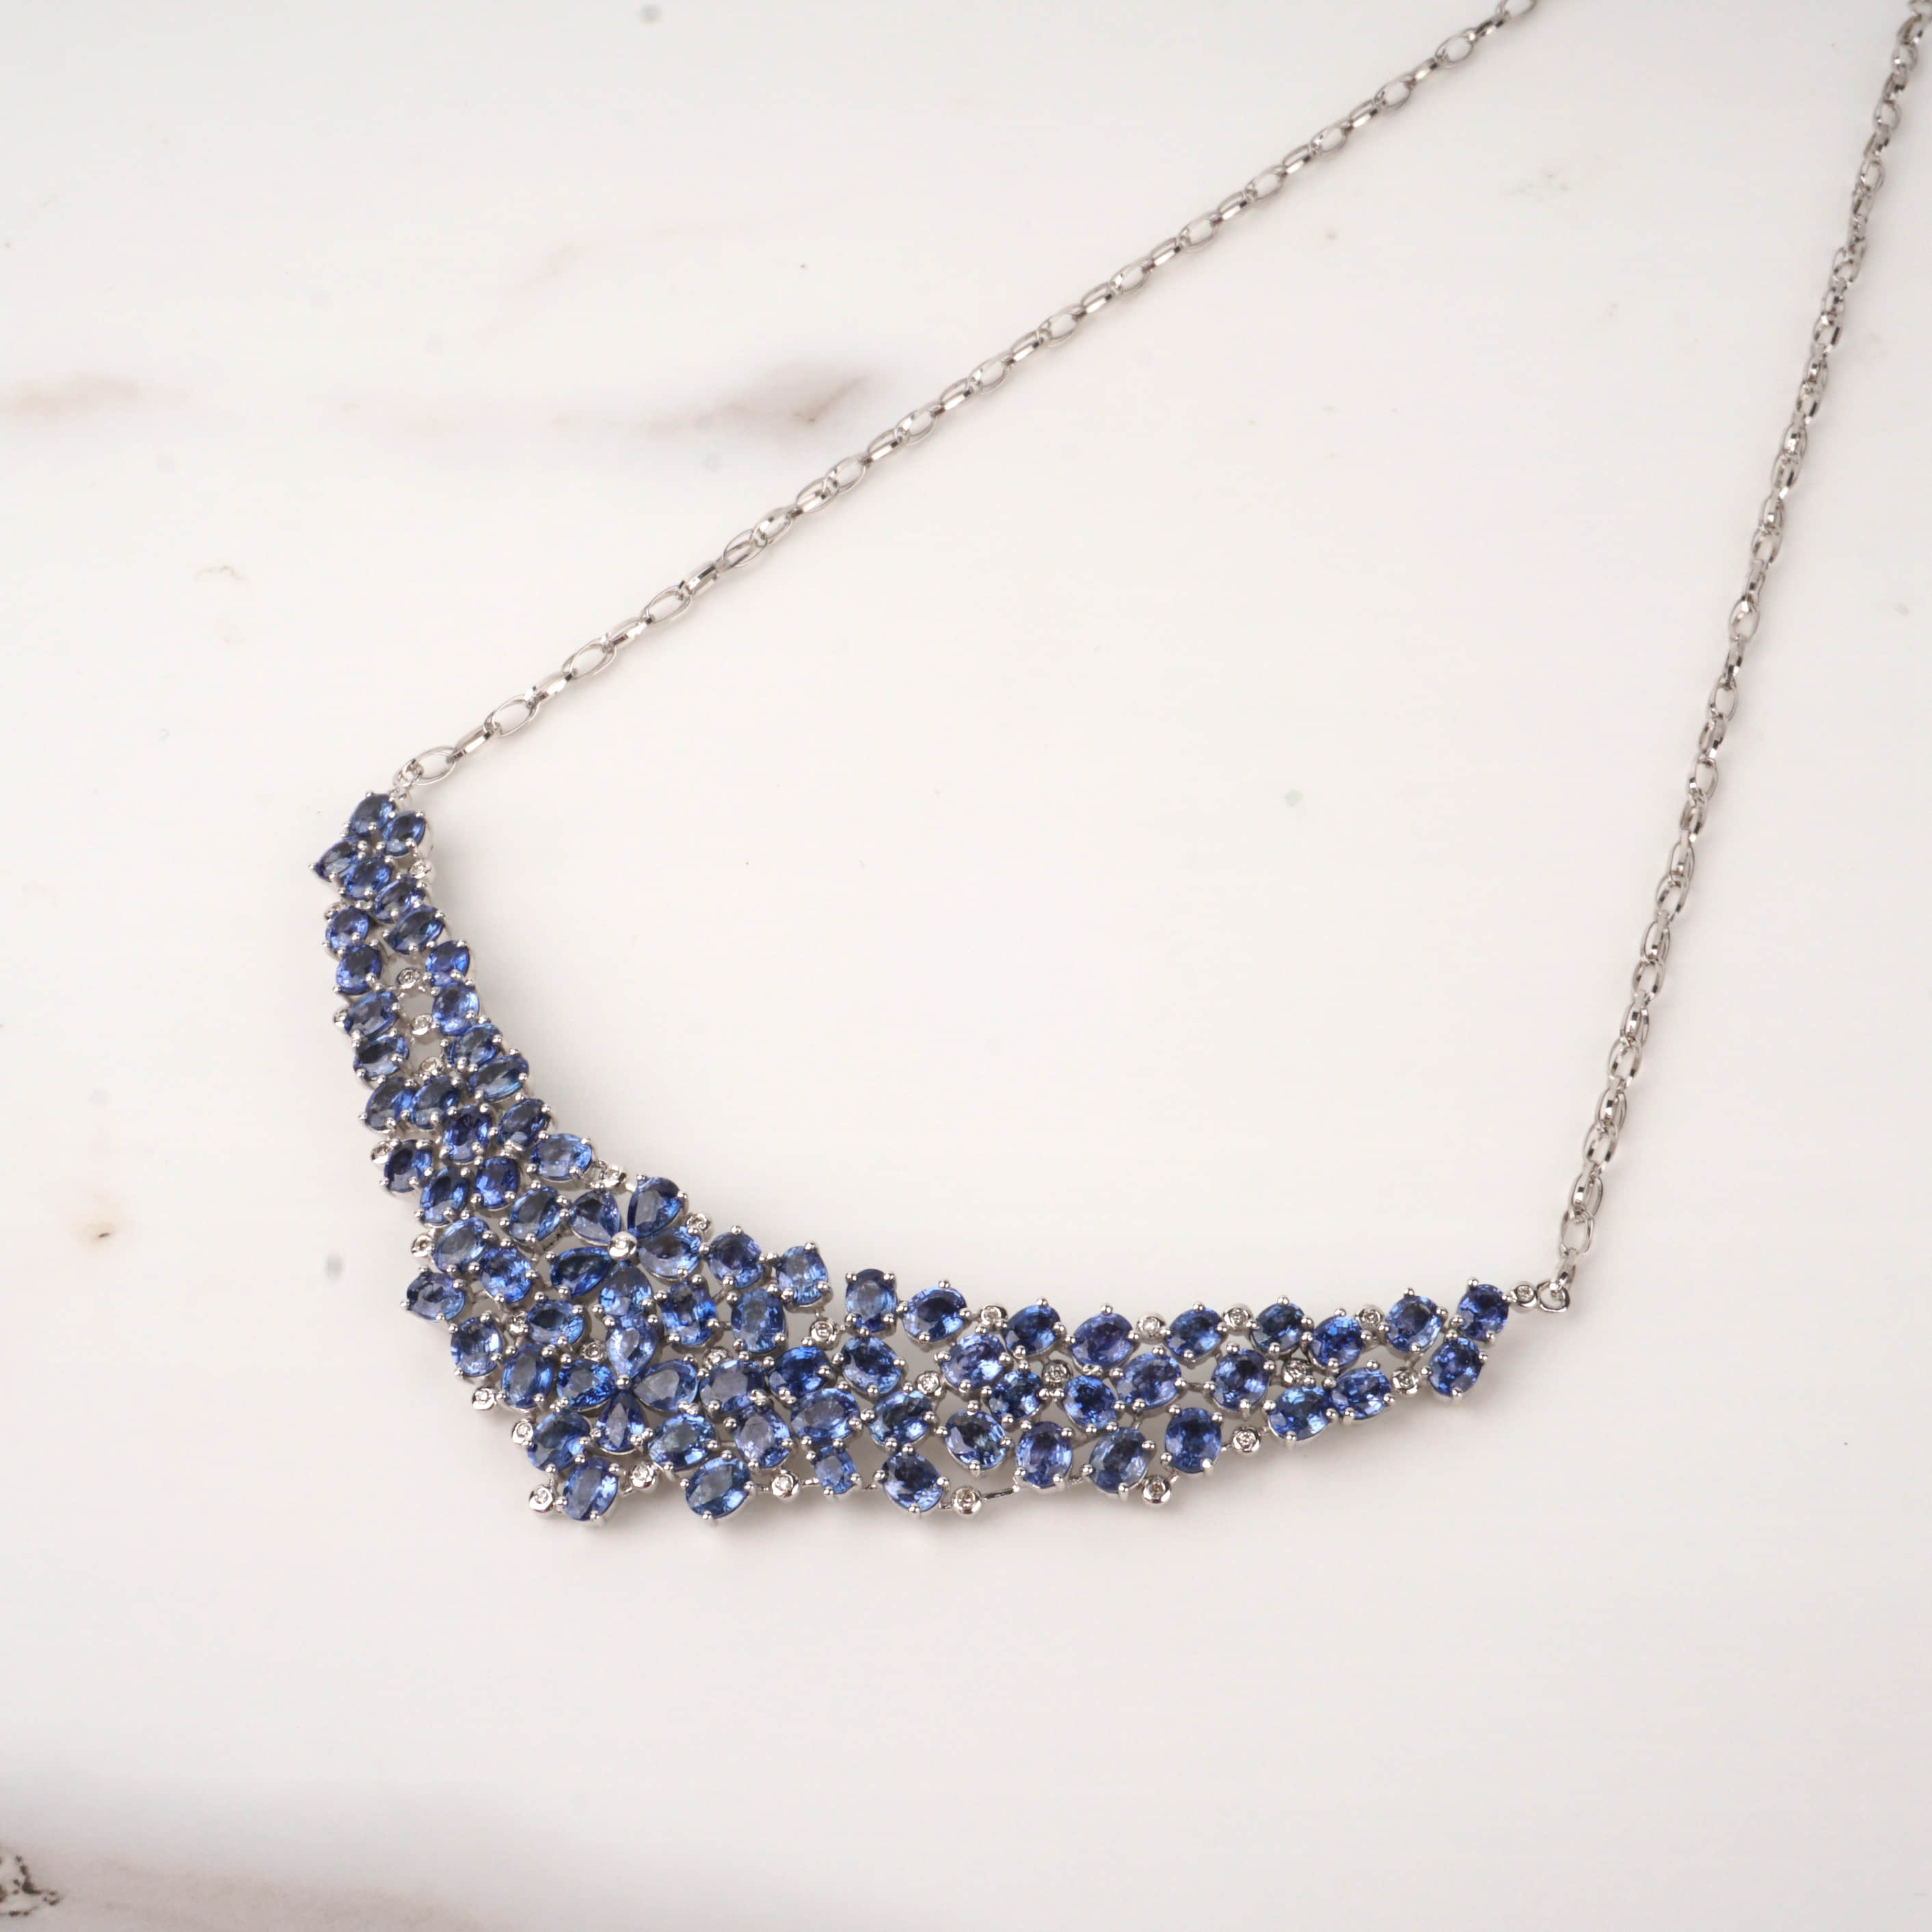 尺寸项链长约42cm(可调节)拍品描述白18k金镶嵌蓝宝石及钻石项链,蓝